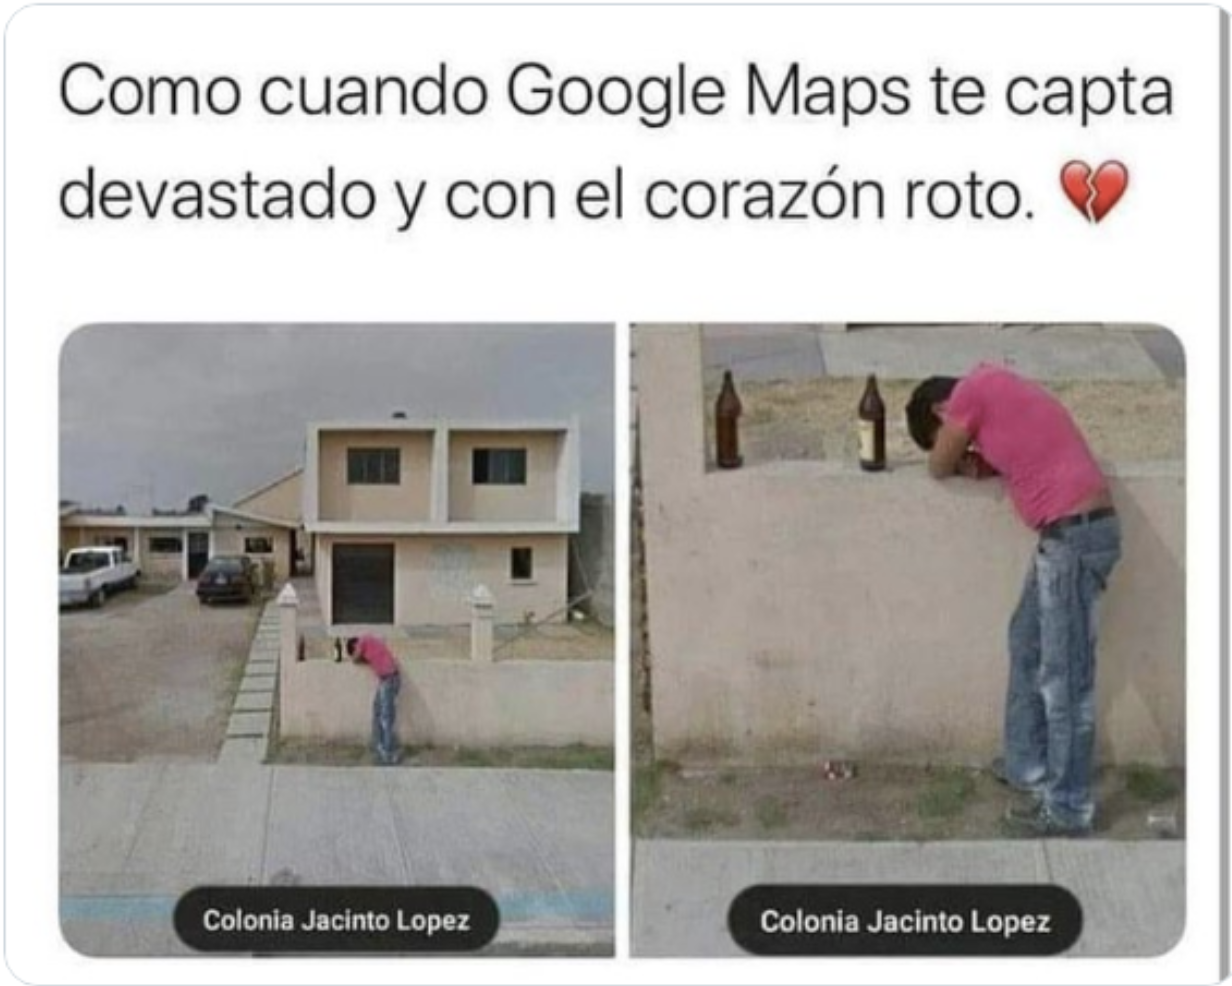 corazón roto google maps cdmx meme